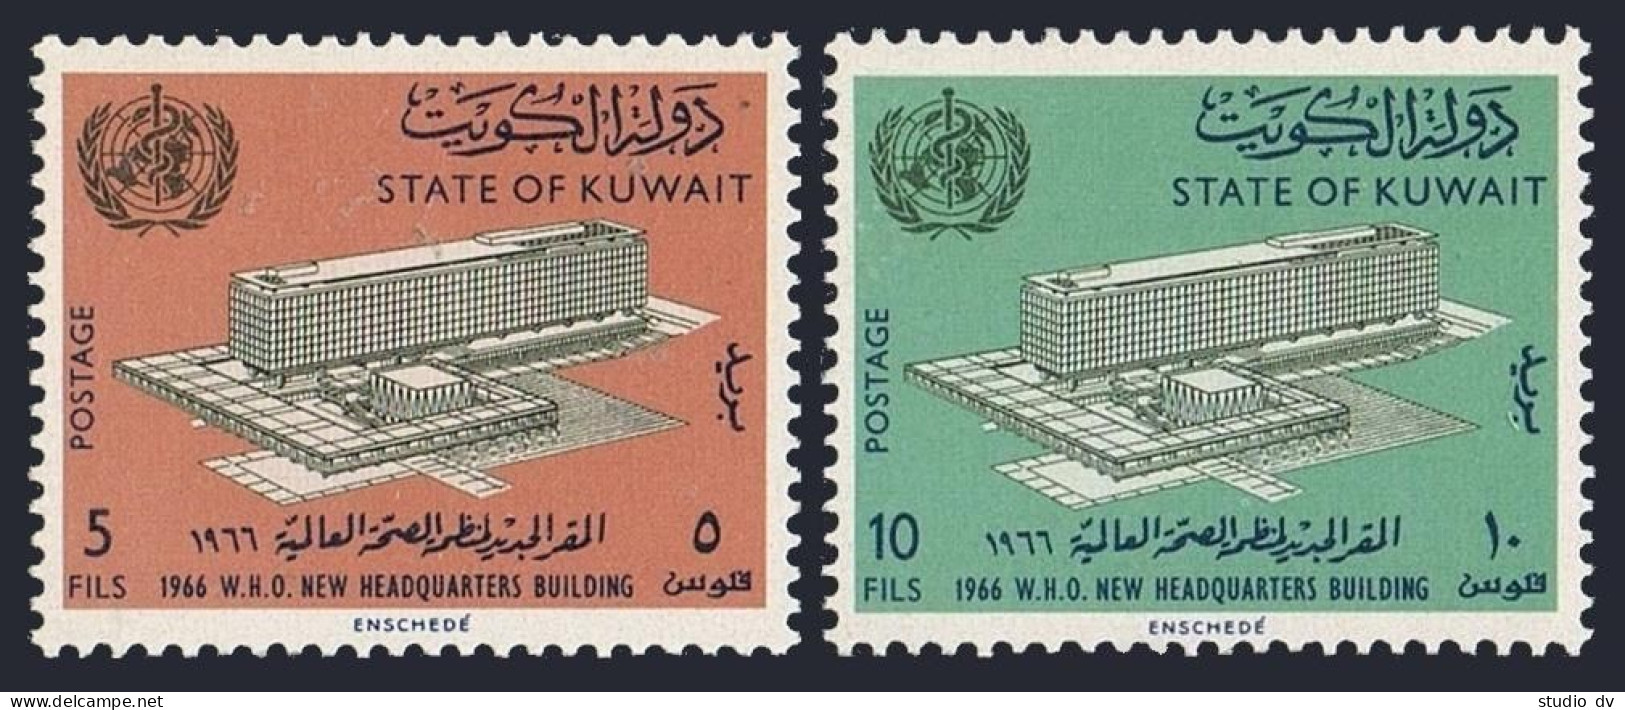 Kuwait 323-324, Hinged. Michel 317-318. New WHO Headquarters, 1966. Geneva. - Koeweit